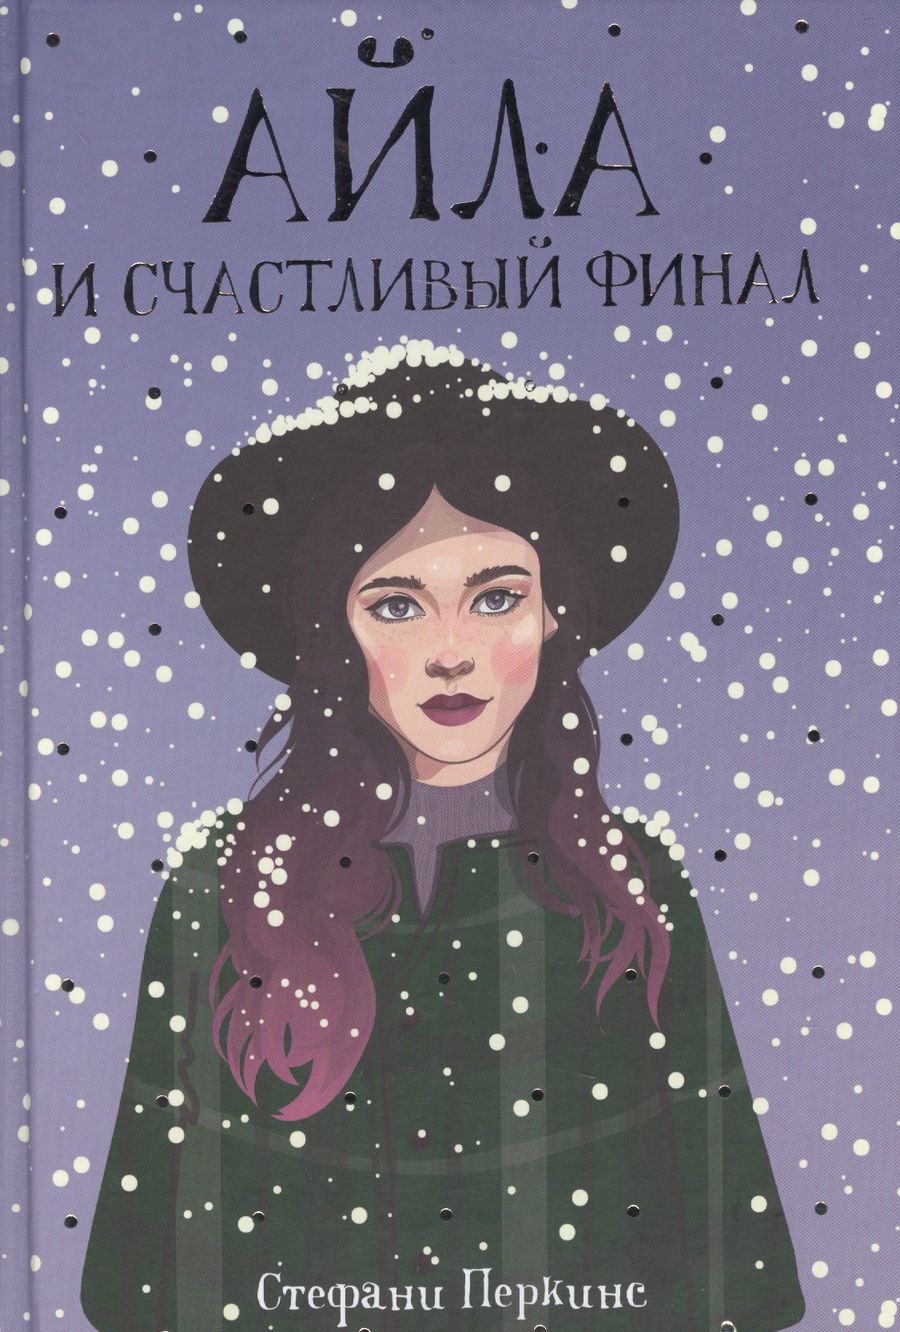 Обложка книги "Стефани Перкинс: Айла и счастливый финал: роман"